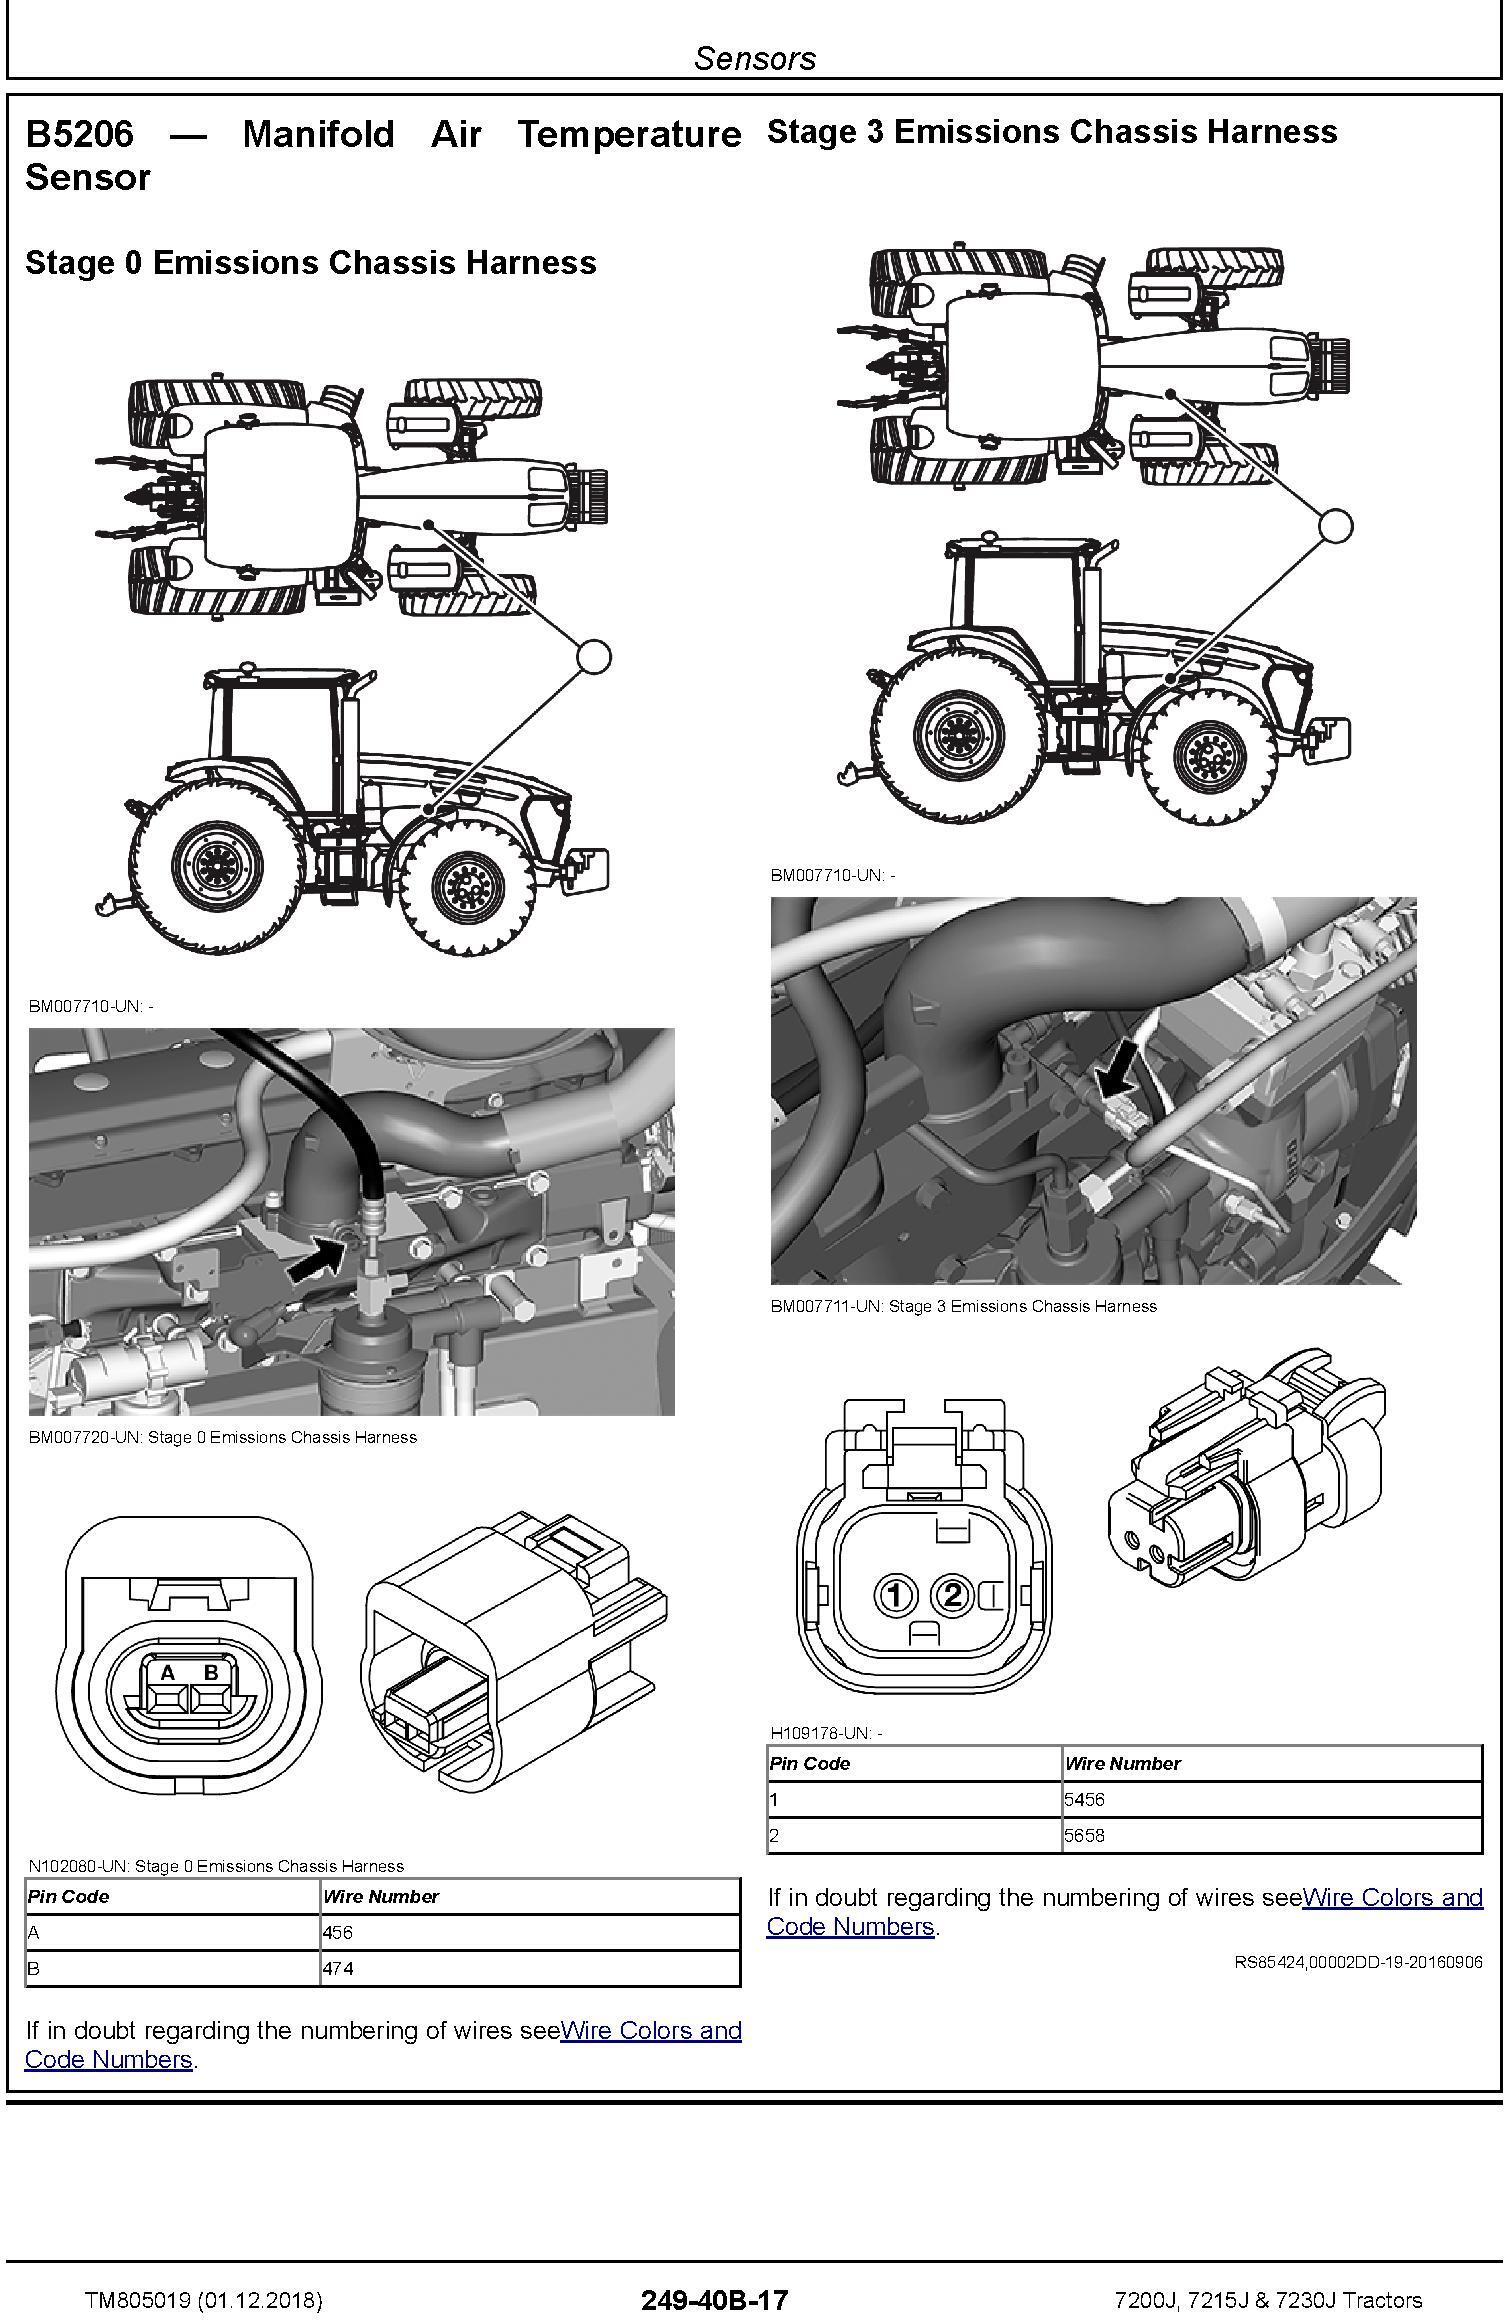 John Deere 7200J, 7215J and 7230J Tractors Diagnostic Technical Service Manual (TM805019) - 3